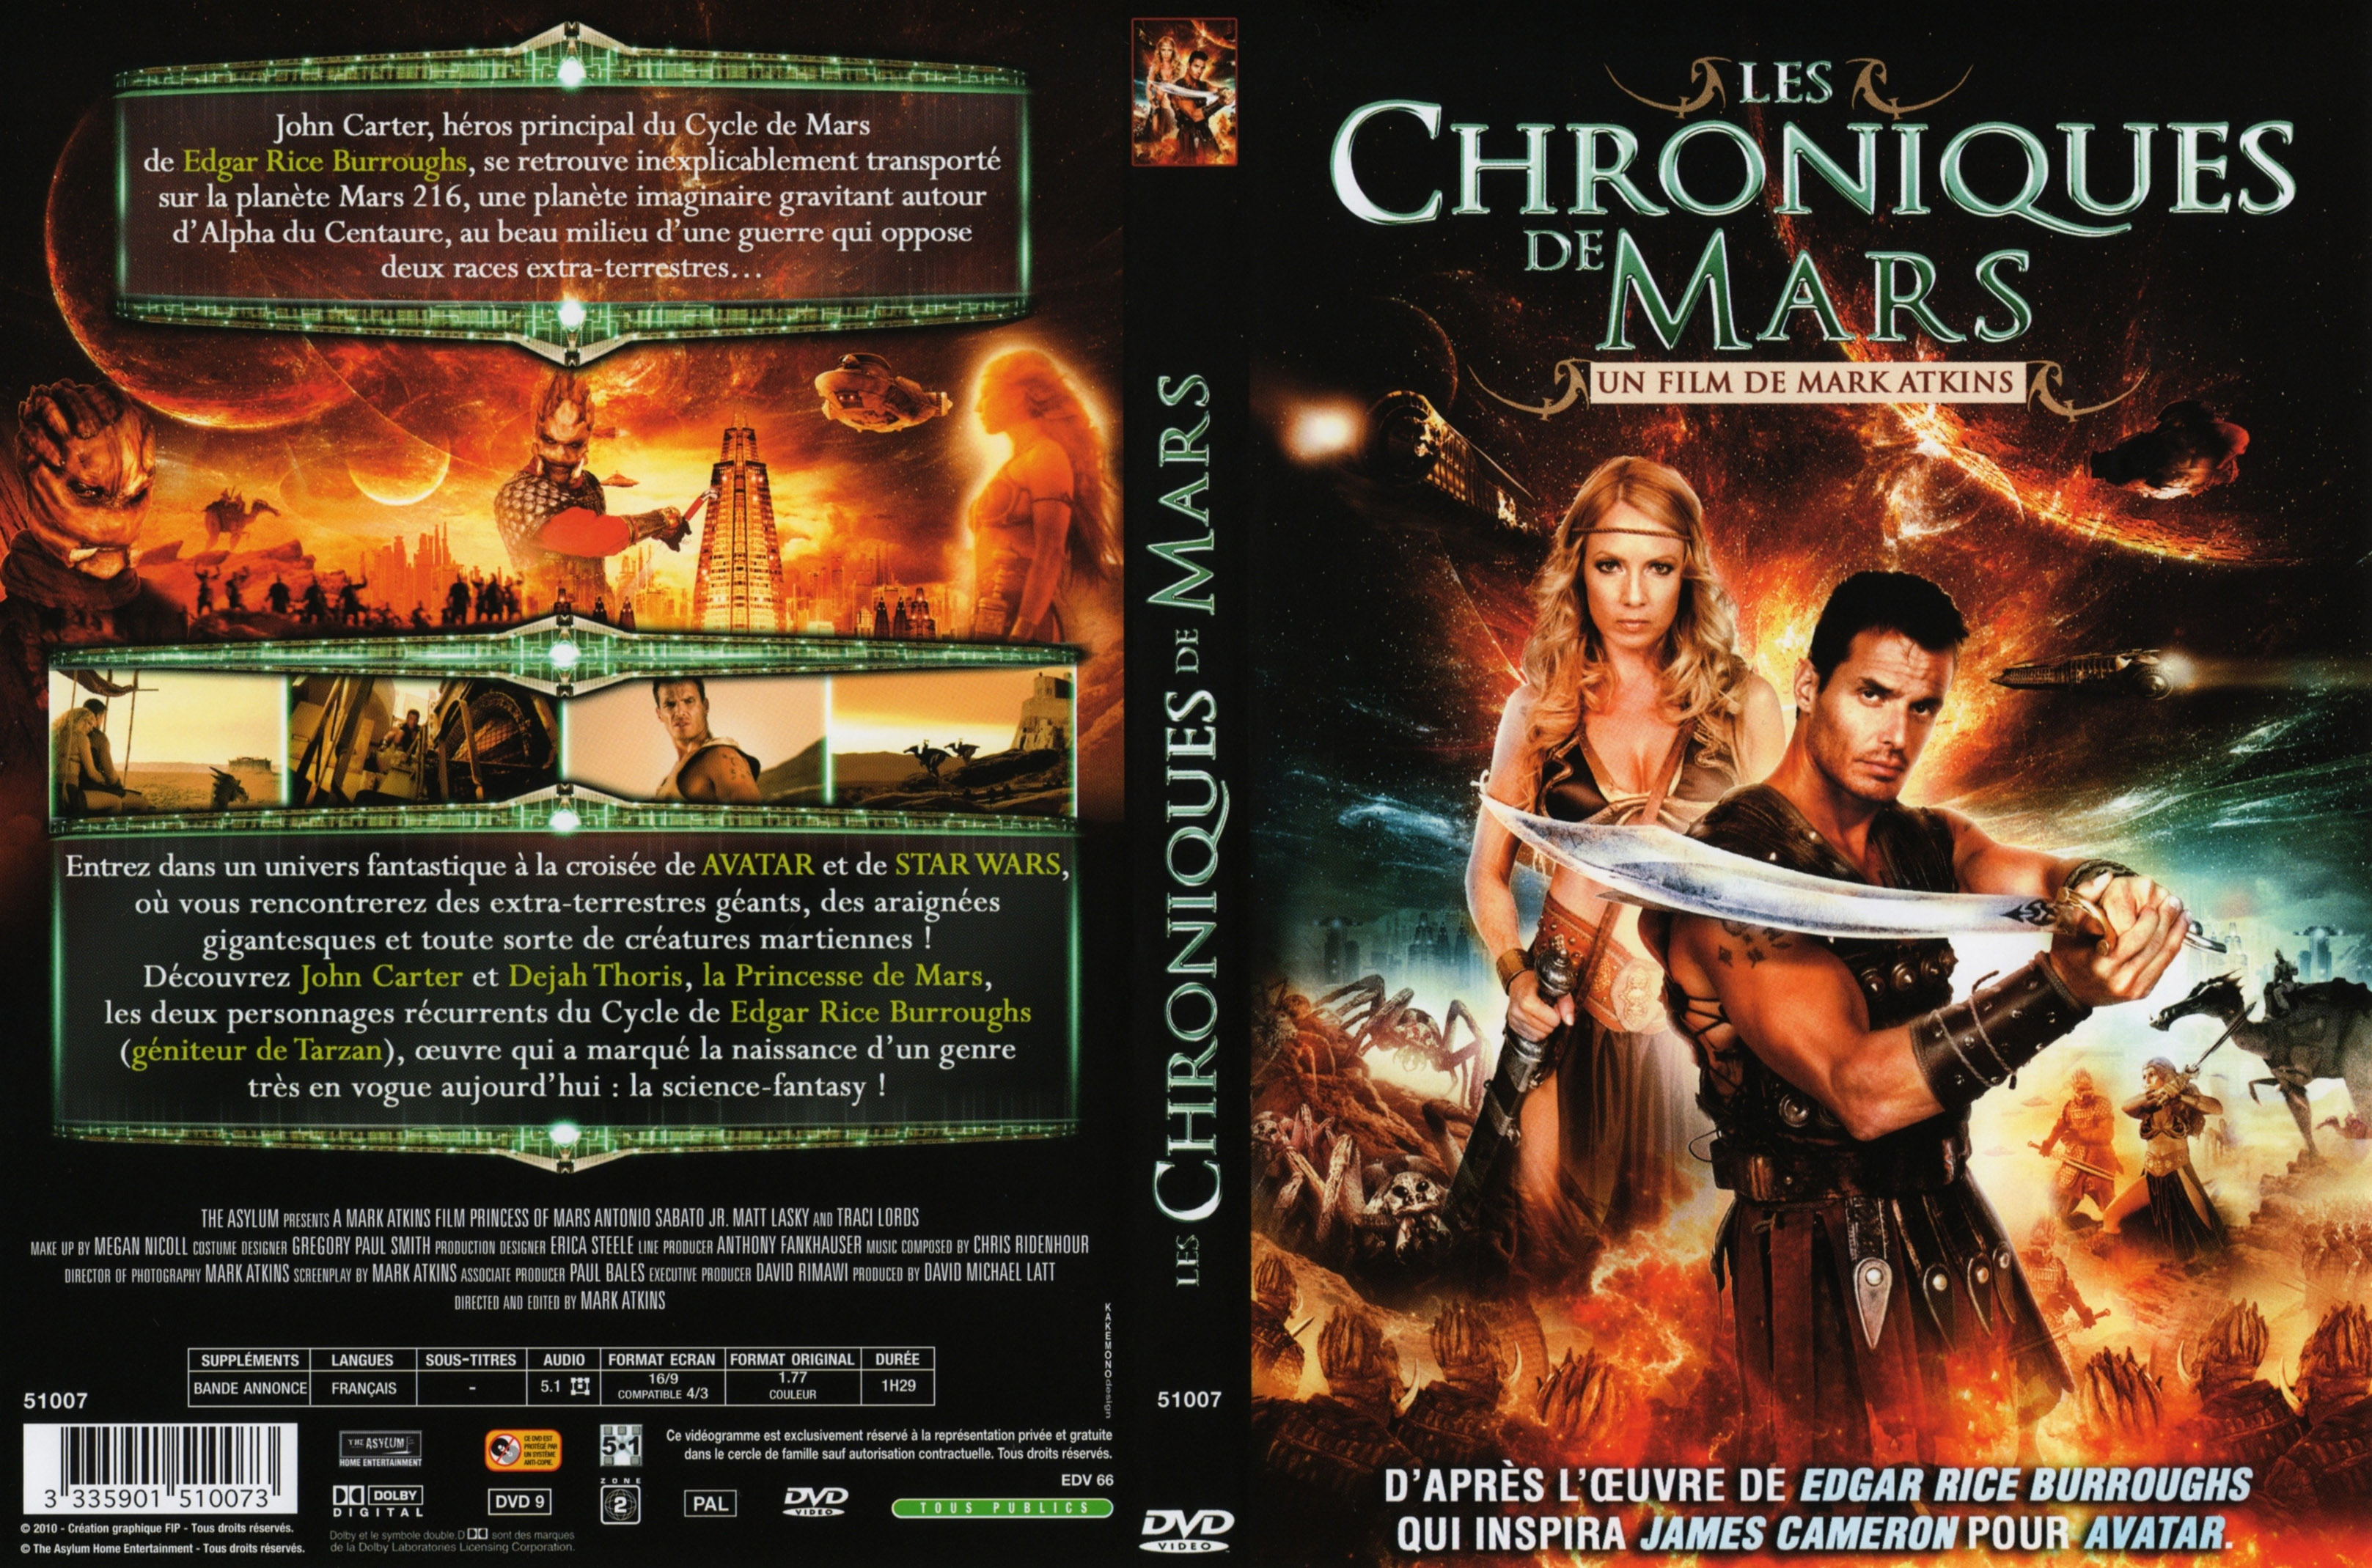 Jaquette DVD Les chroniques de Mars